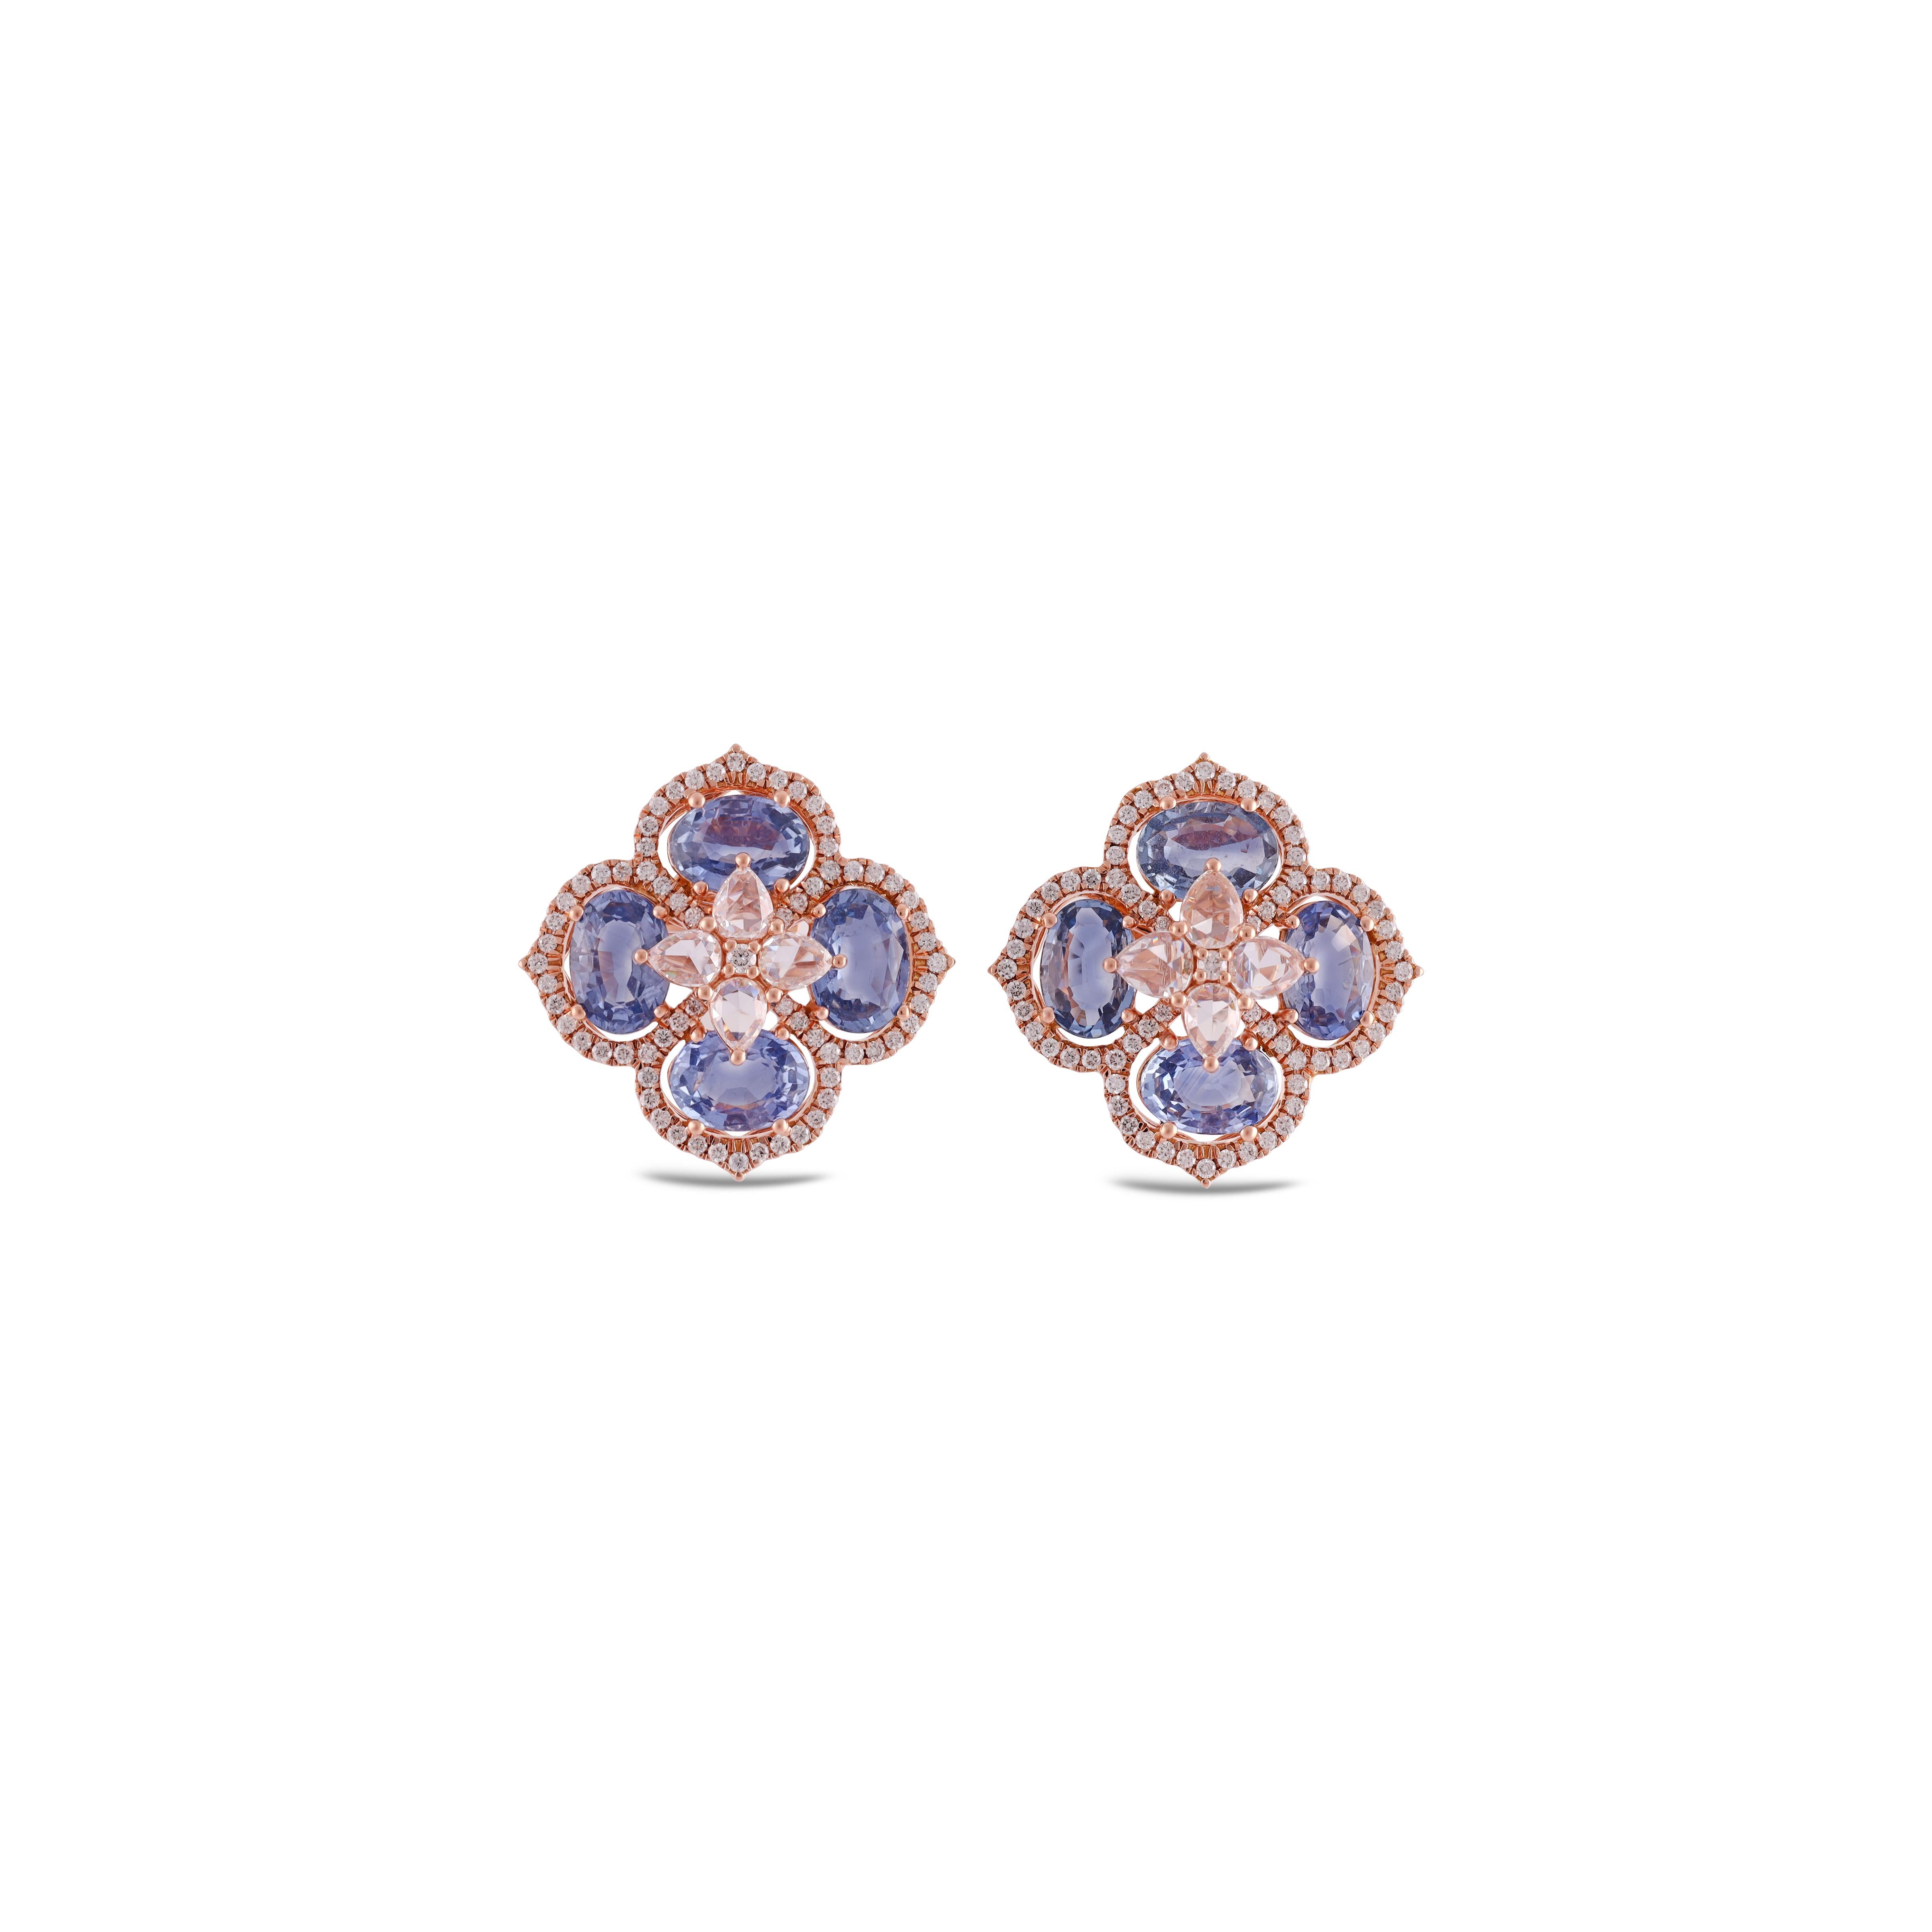 Ein atemberaubendes, feines und beeindruckendes Paar von  6,66 Karat blauer Saphir & 1,34 Karat  Diamant mit massivem 18k Rose Gold. 

Ohrstecker sind von subtiler Schönheit und bringen die Farben der natürlichen Edelsteine und leuchtenden Diamanten